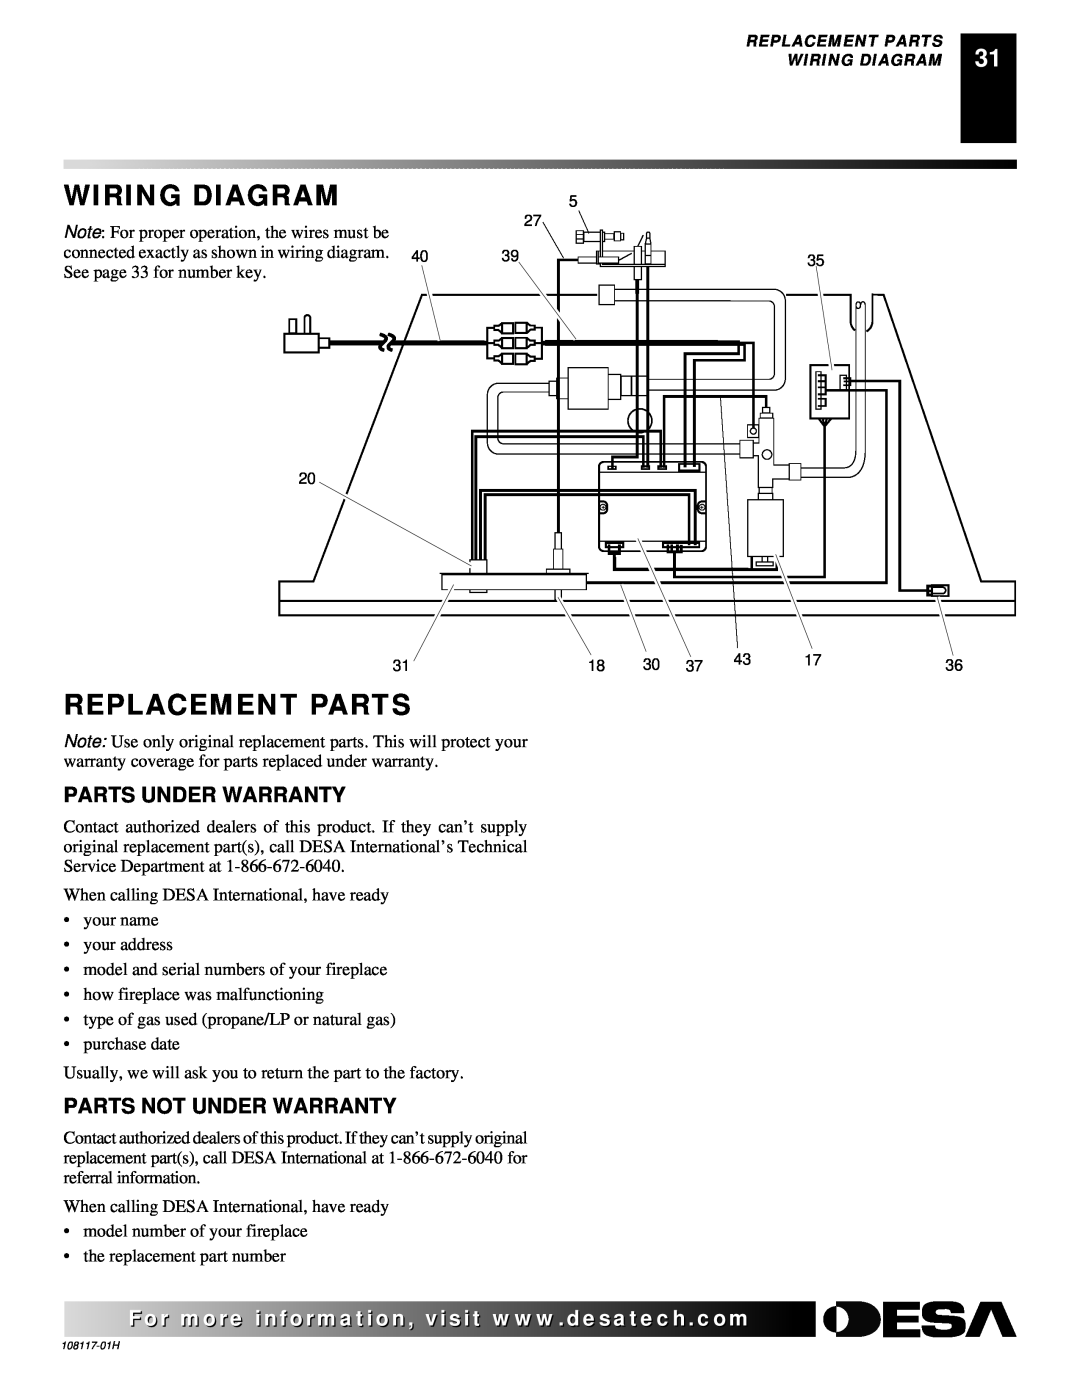 Desa EFP33PR, EFP33NR installation manual Wiring Diagram, Replacement Parts, Parts Under Warranty, Parts Not Under Warranty 